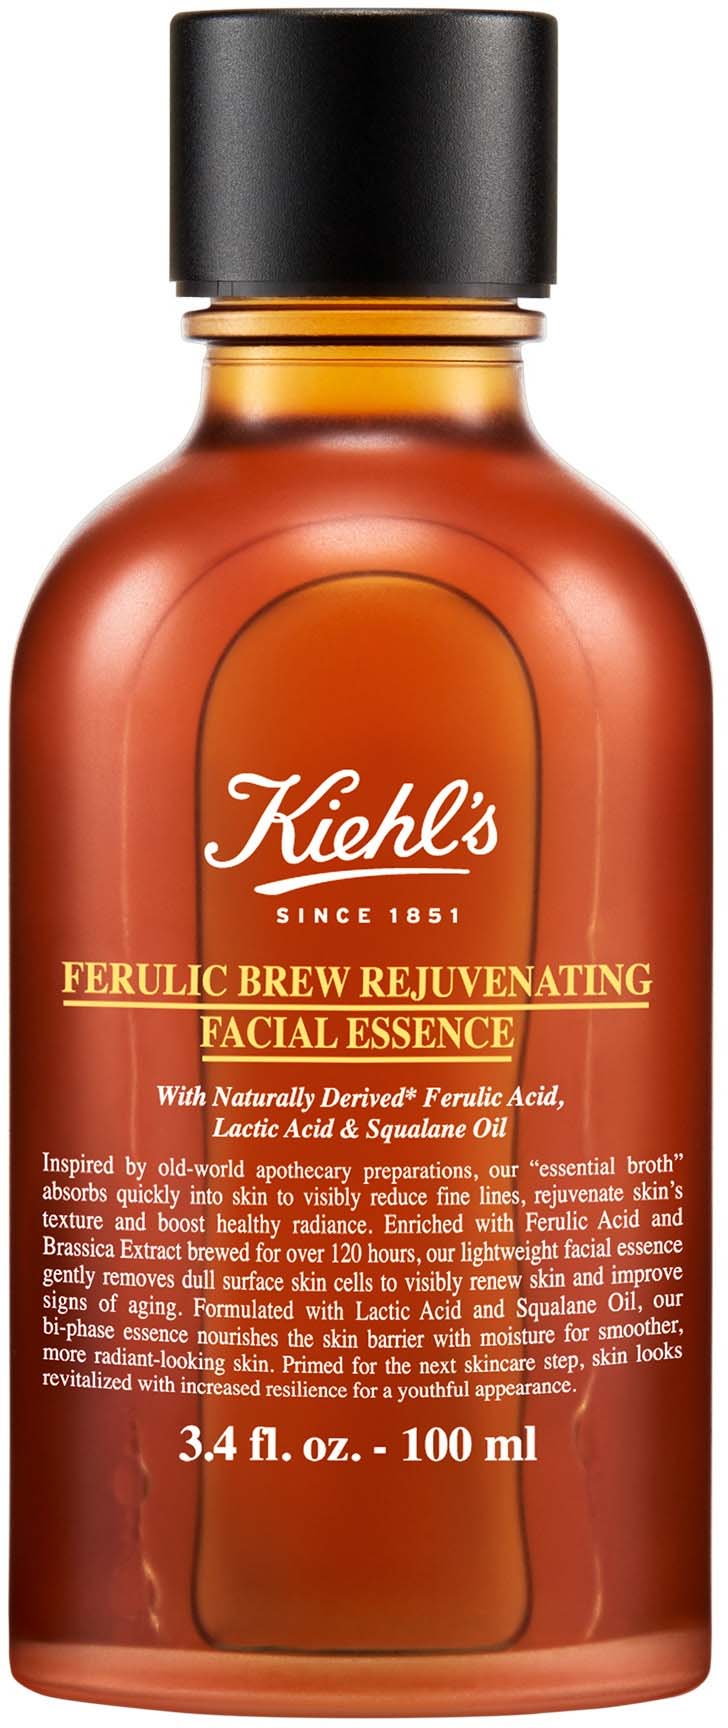 Ferulic Brew Rejuvenating Facial Essence - Esencja odmładzająca z kwasem ferulowym